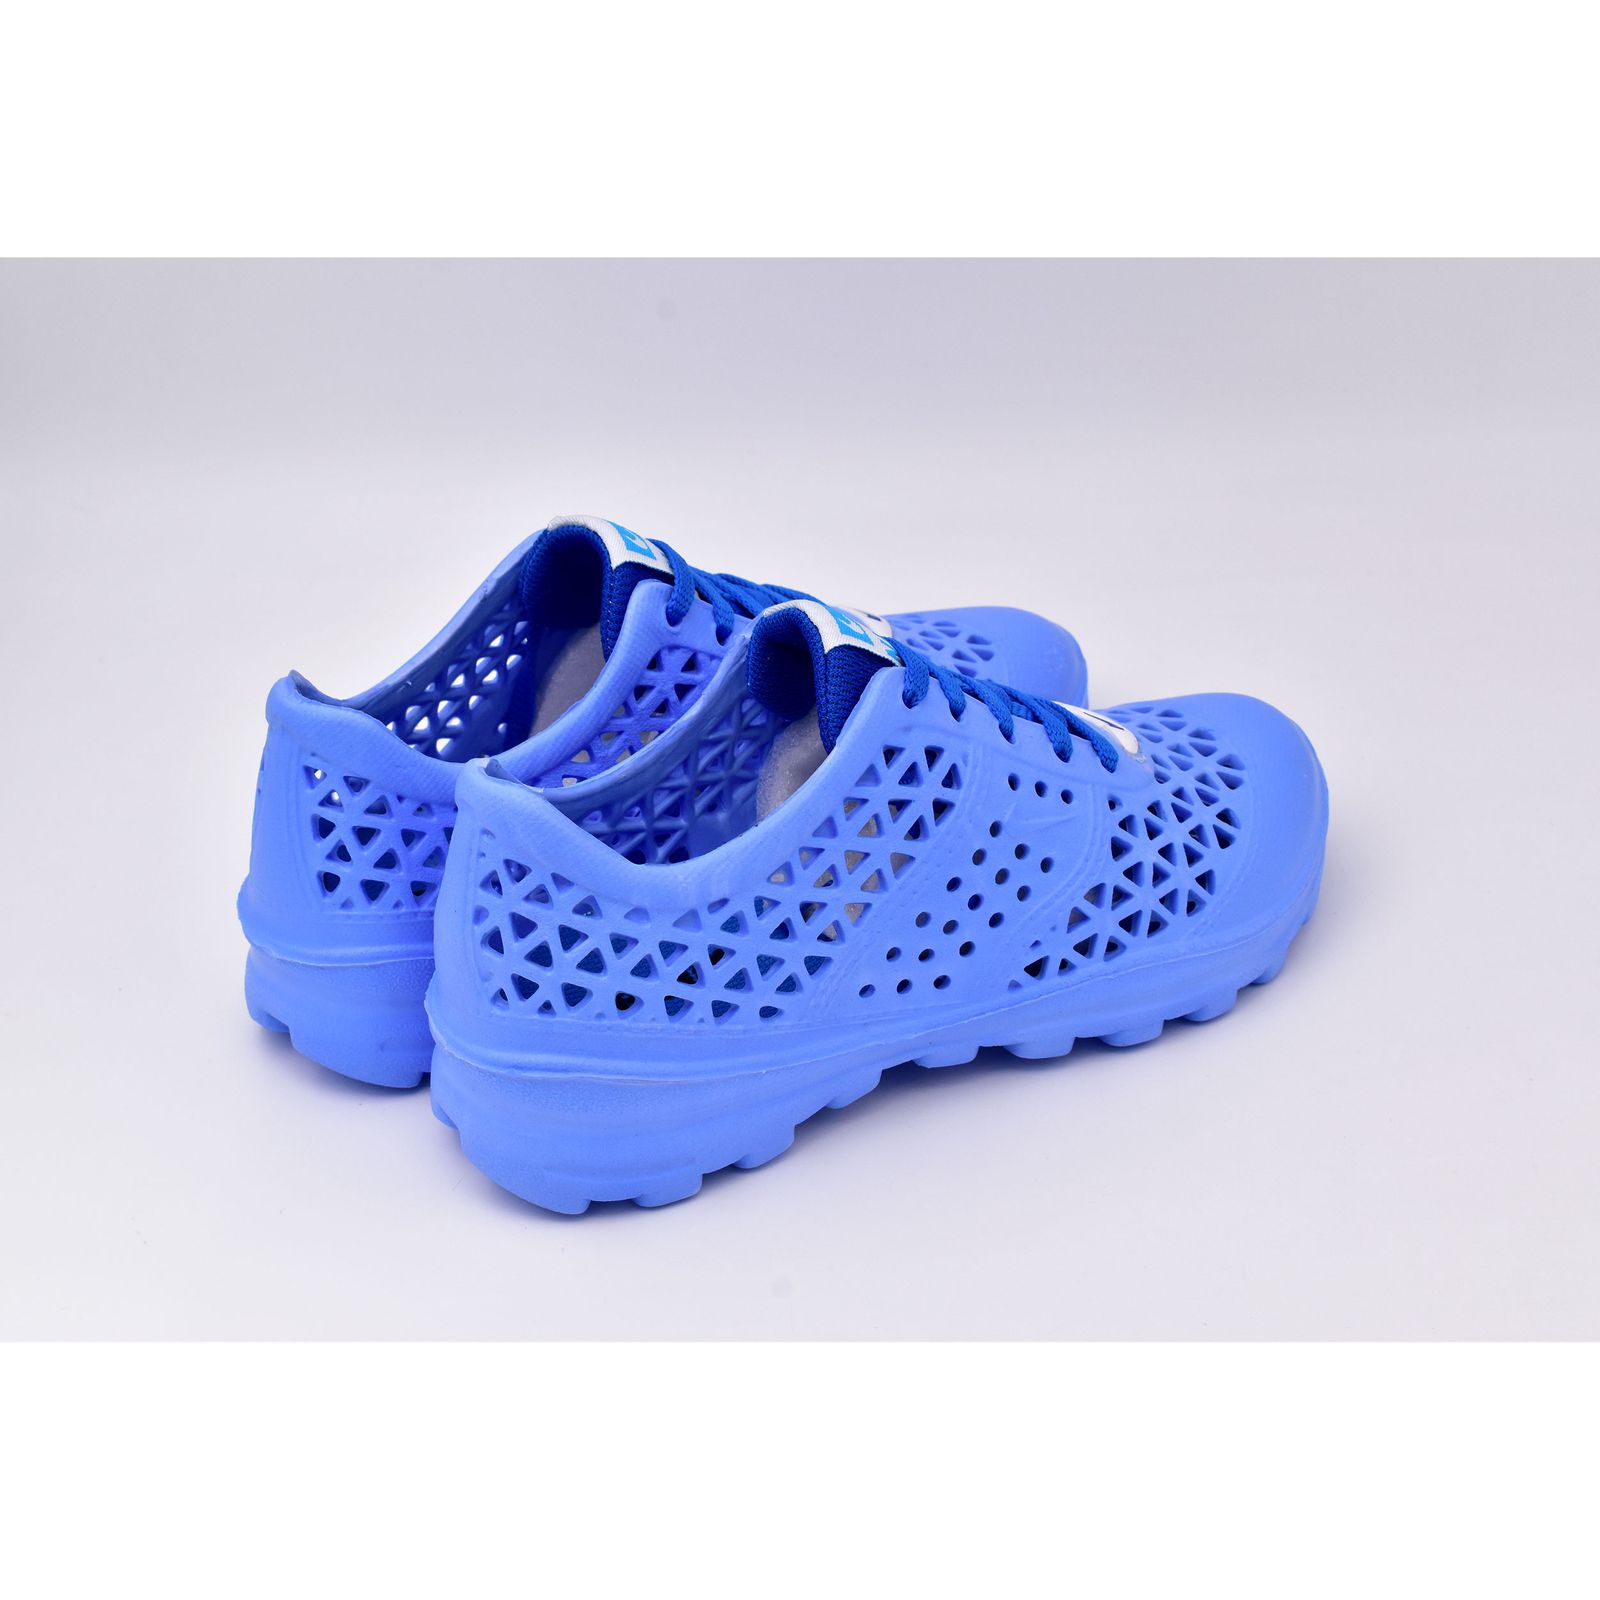  کفش ورزش های آبی زنانه نسیم مدل مرجان کد 8713 -  - 5